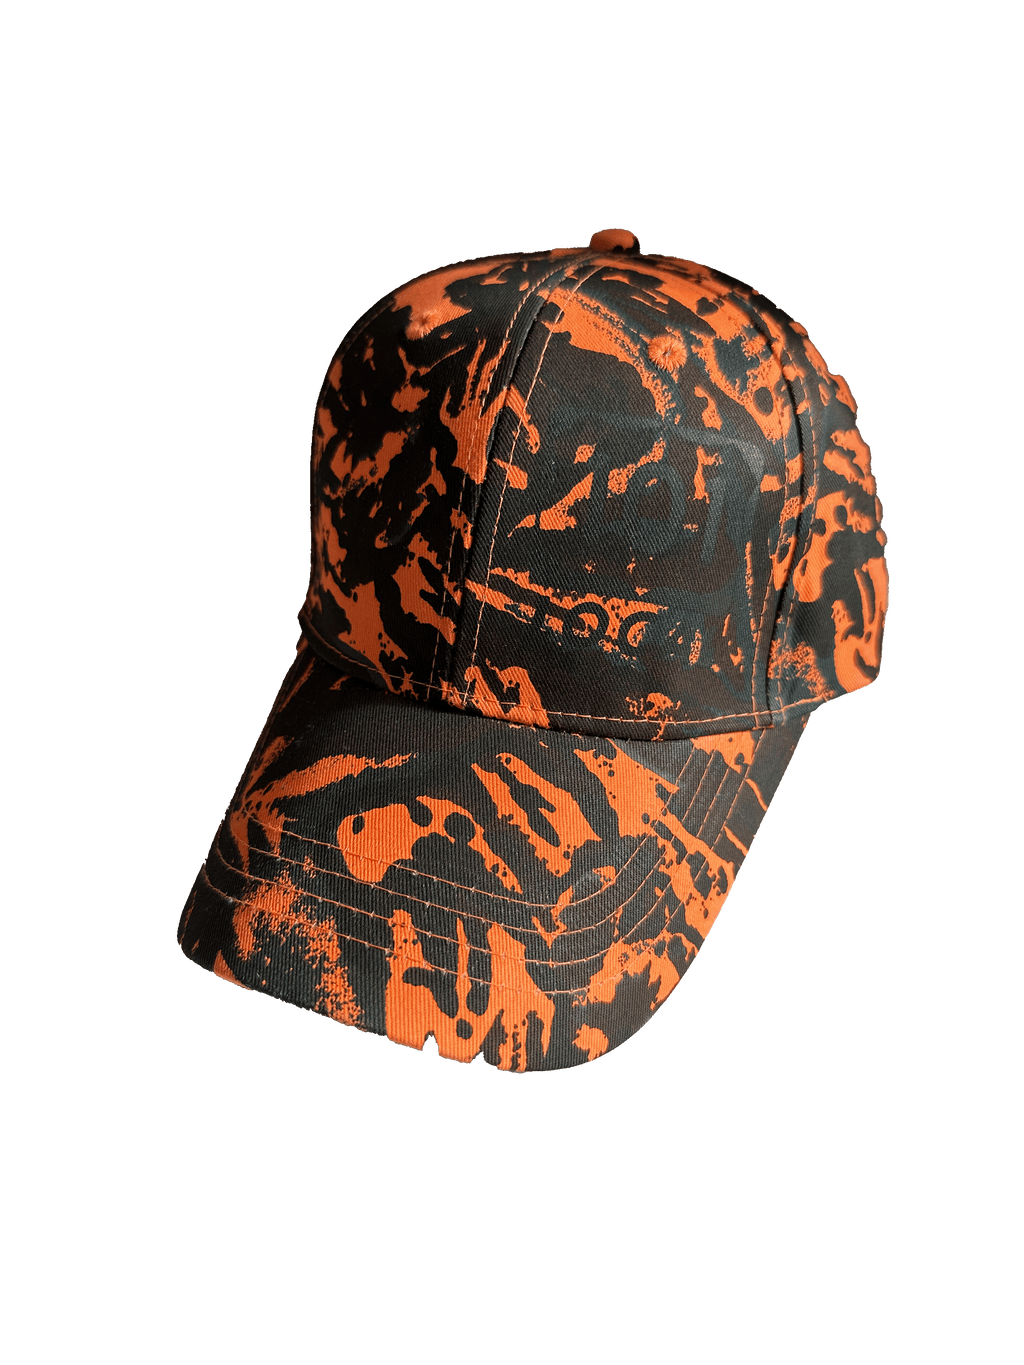 Woods over Waves Hat - Orange Camo